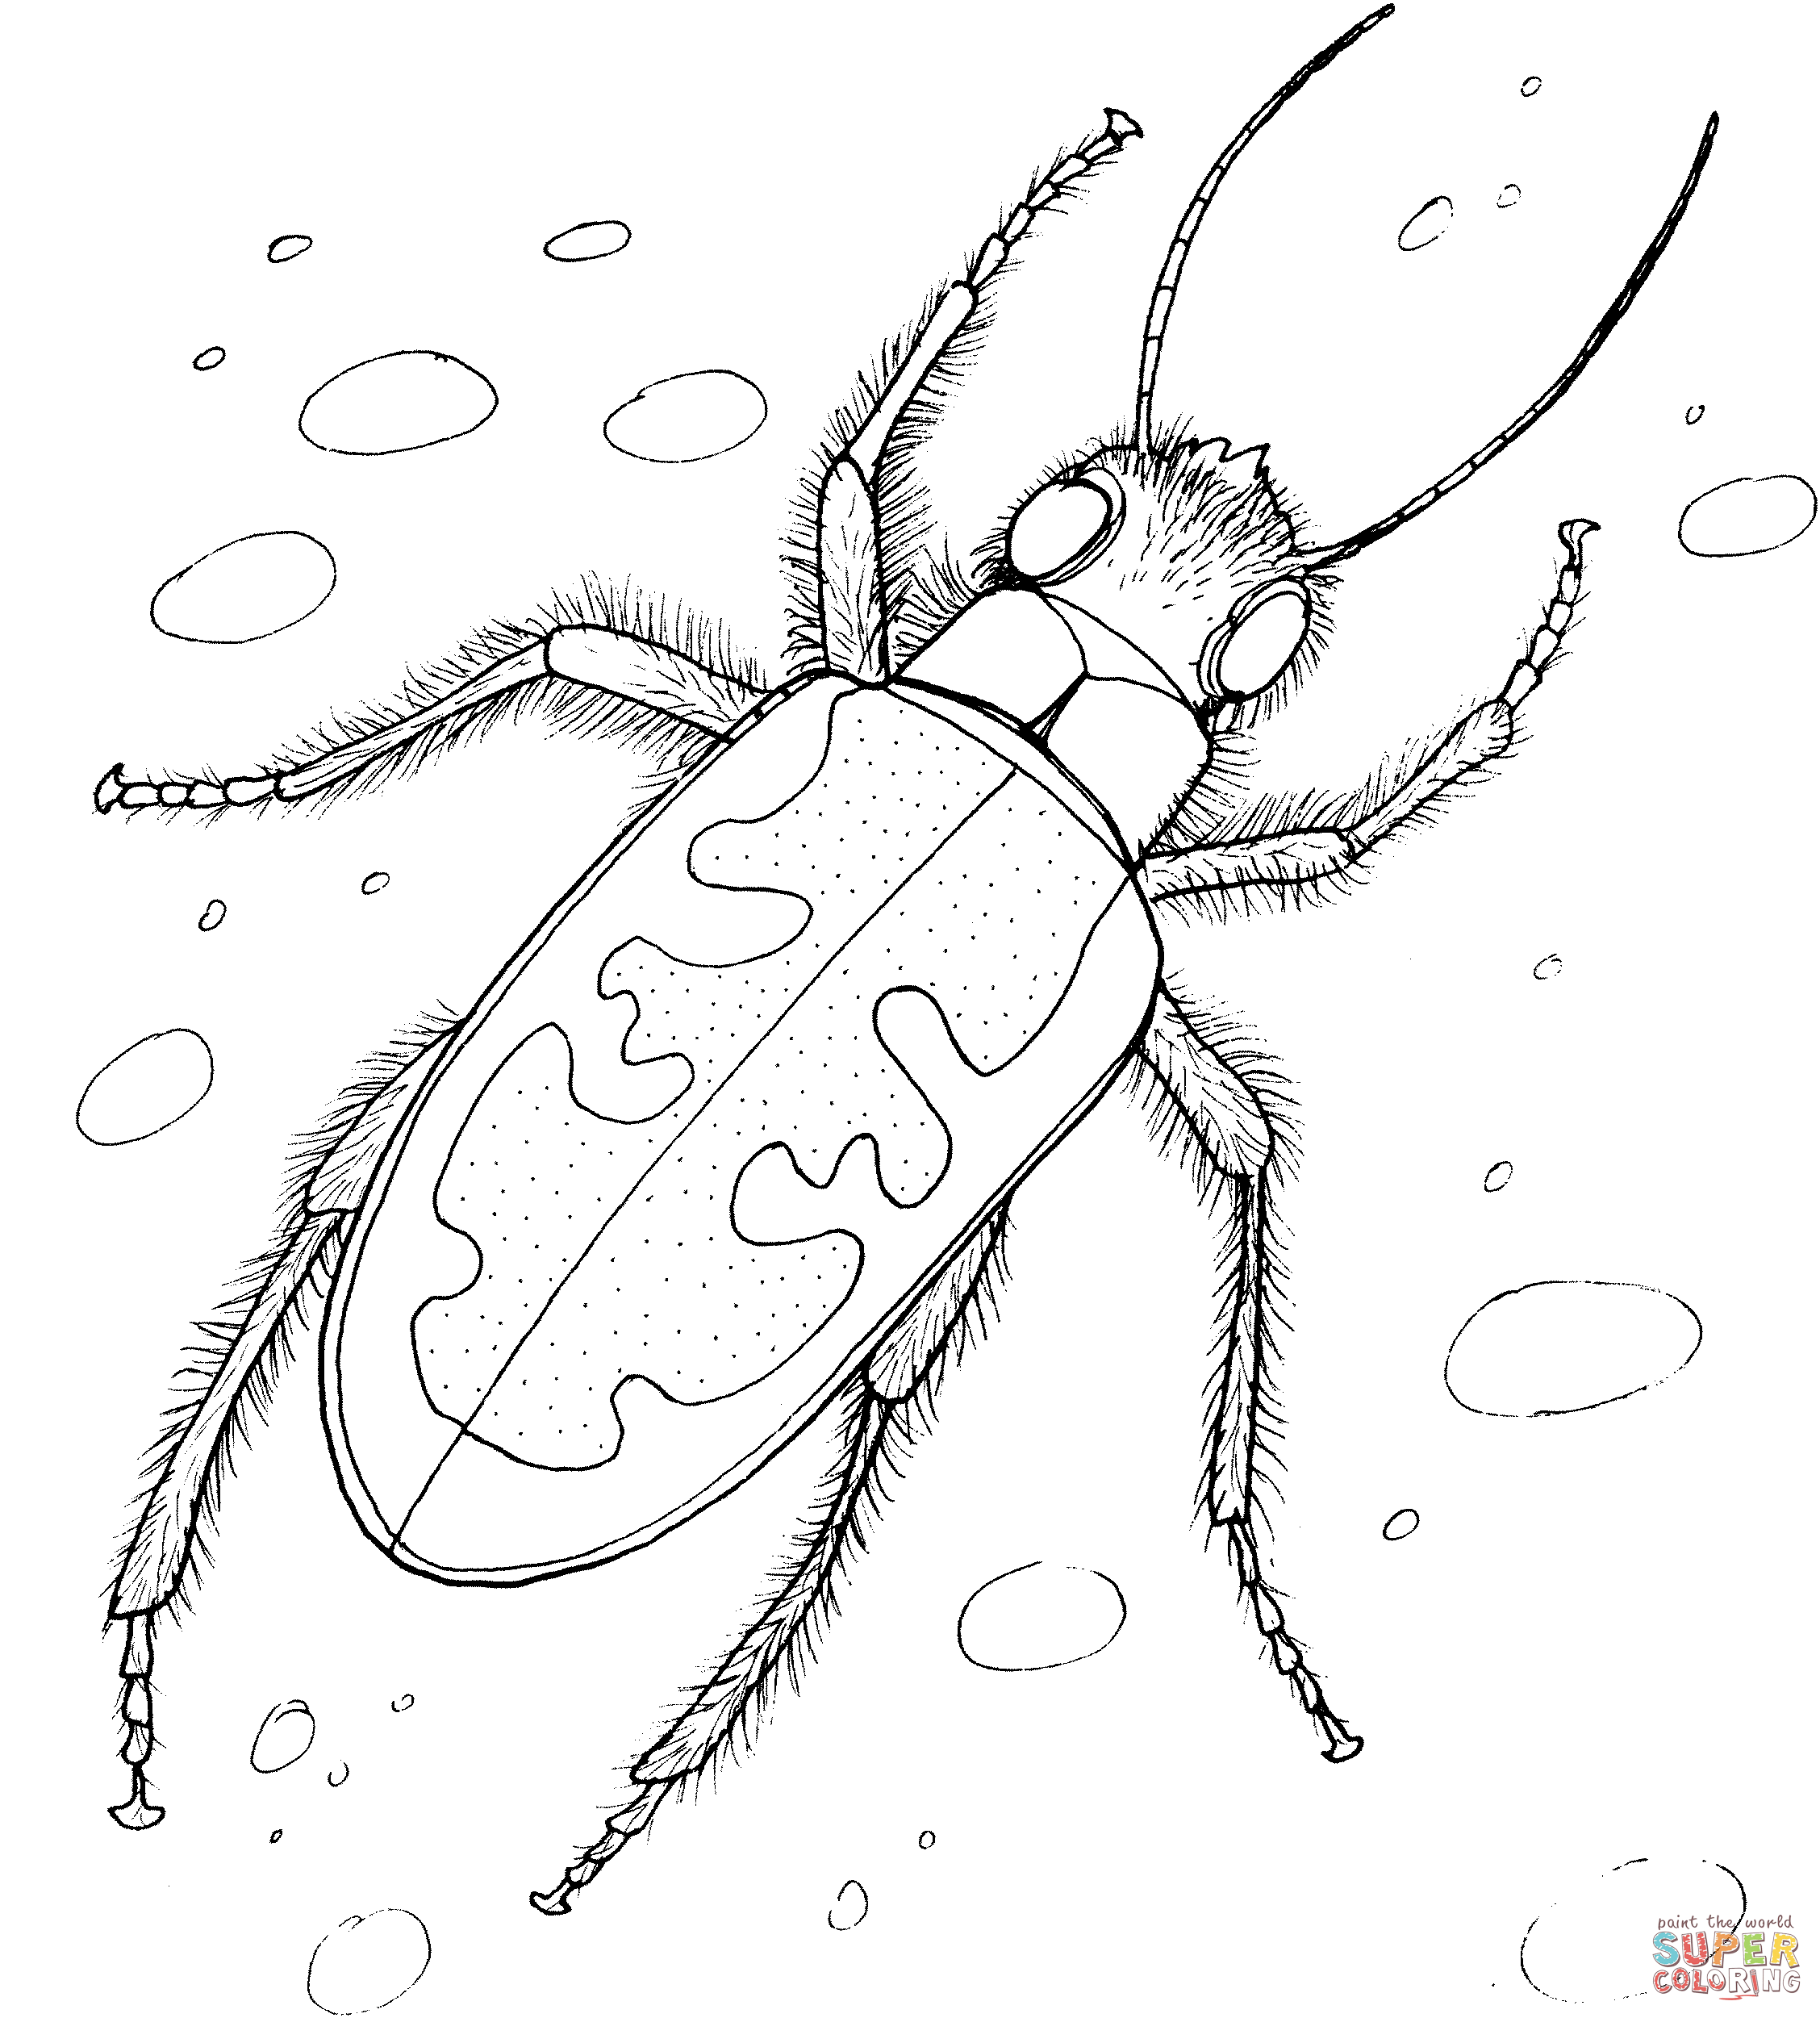 Dibujo de un escarabajo tigre para colorear dibujos para colorear imprimir gratis